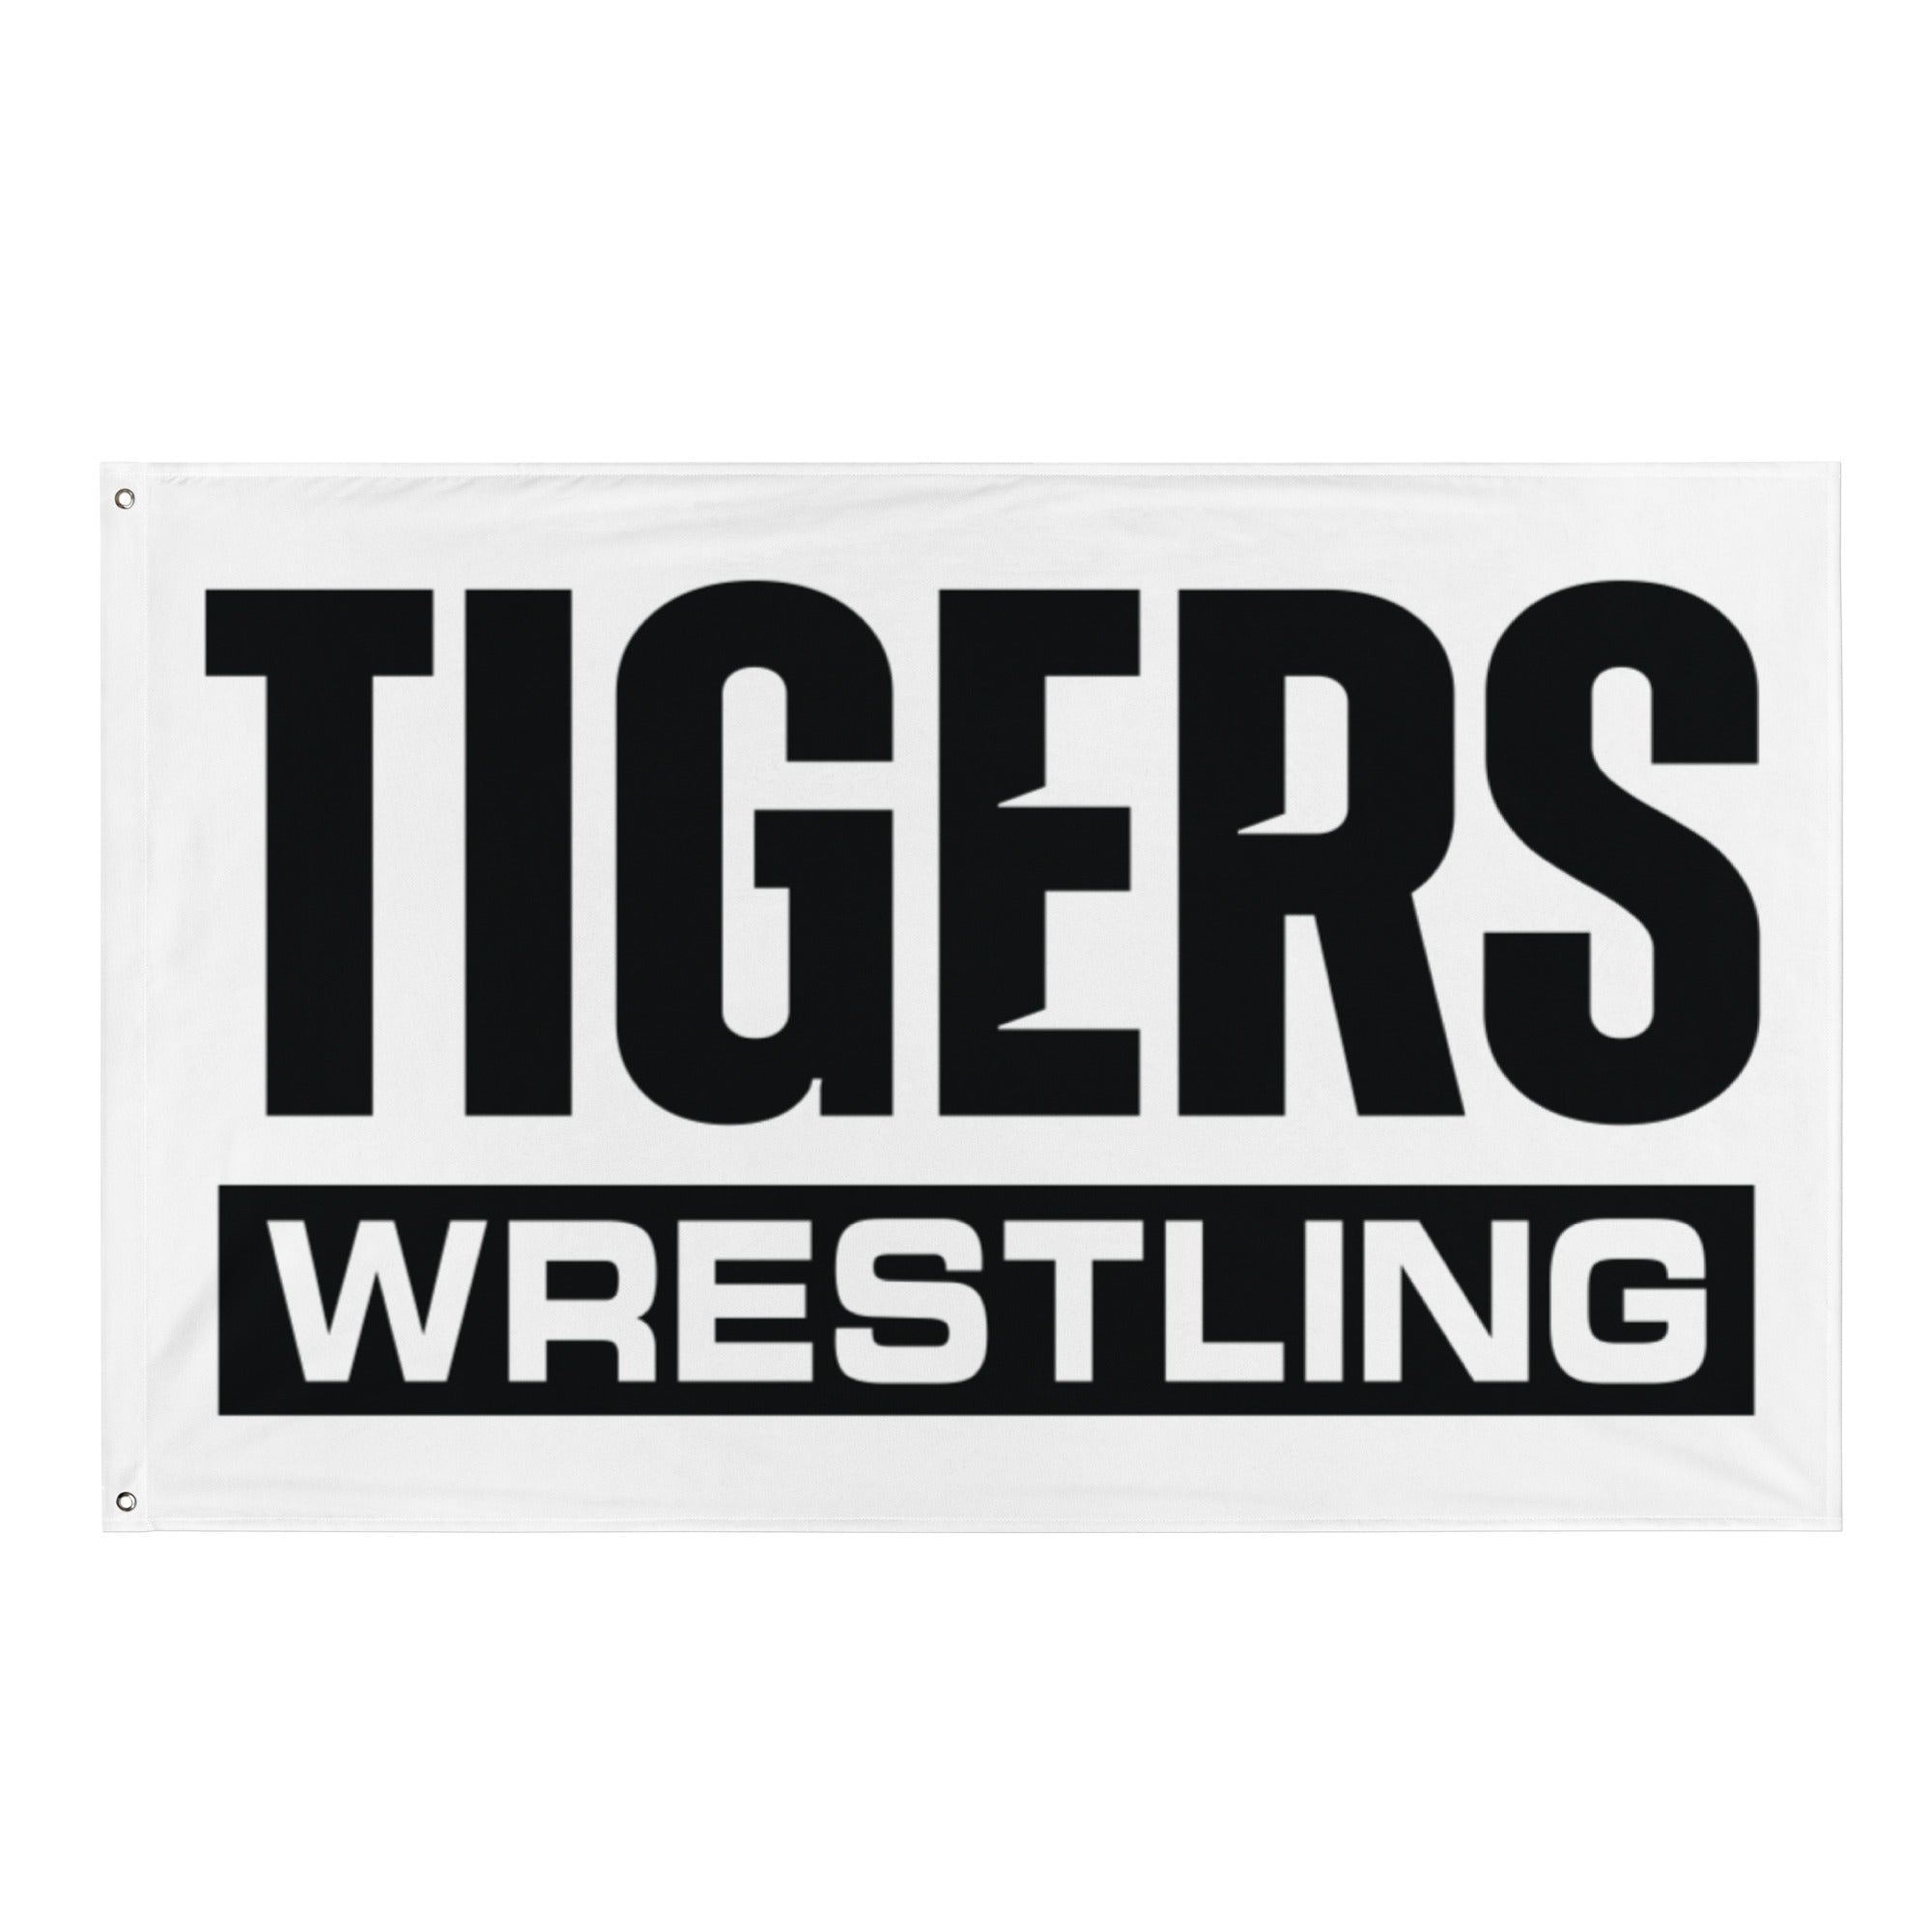 Plattsburg High School Wrestling White All-Over Print Flag